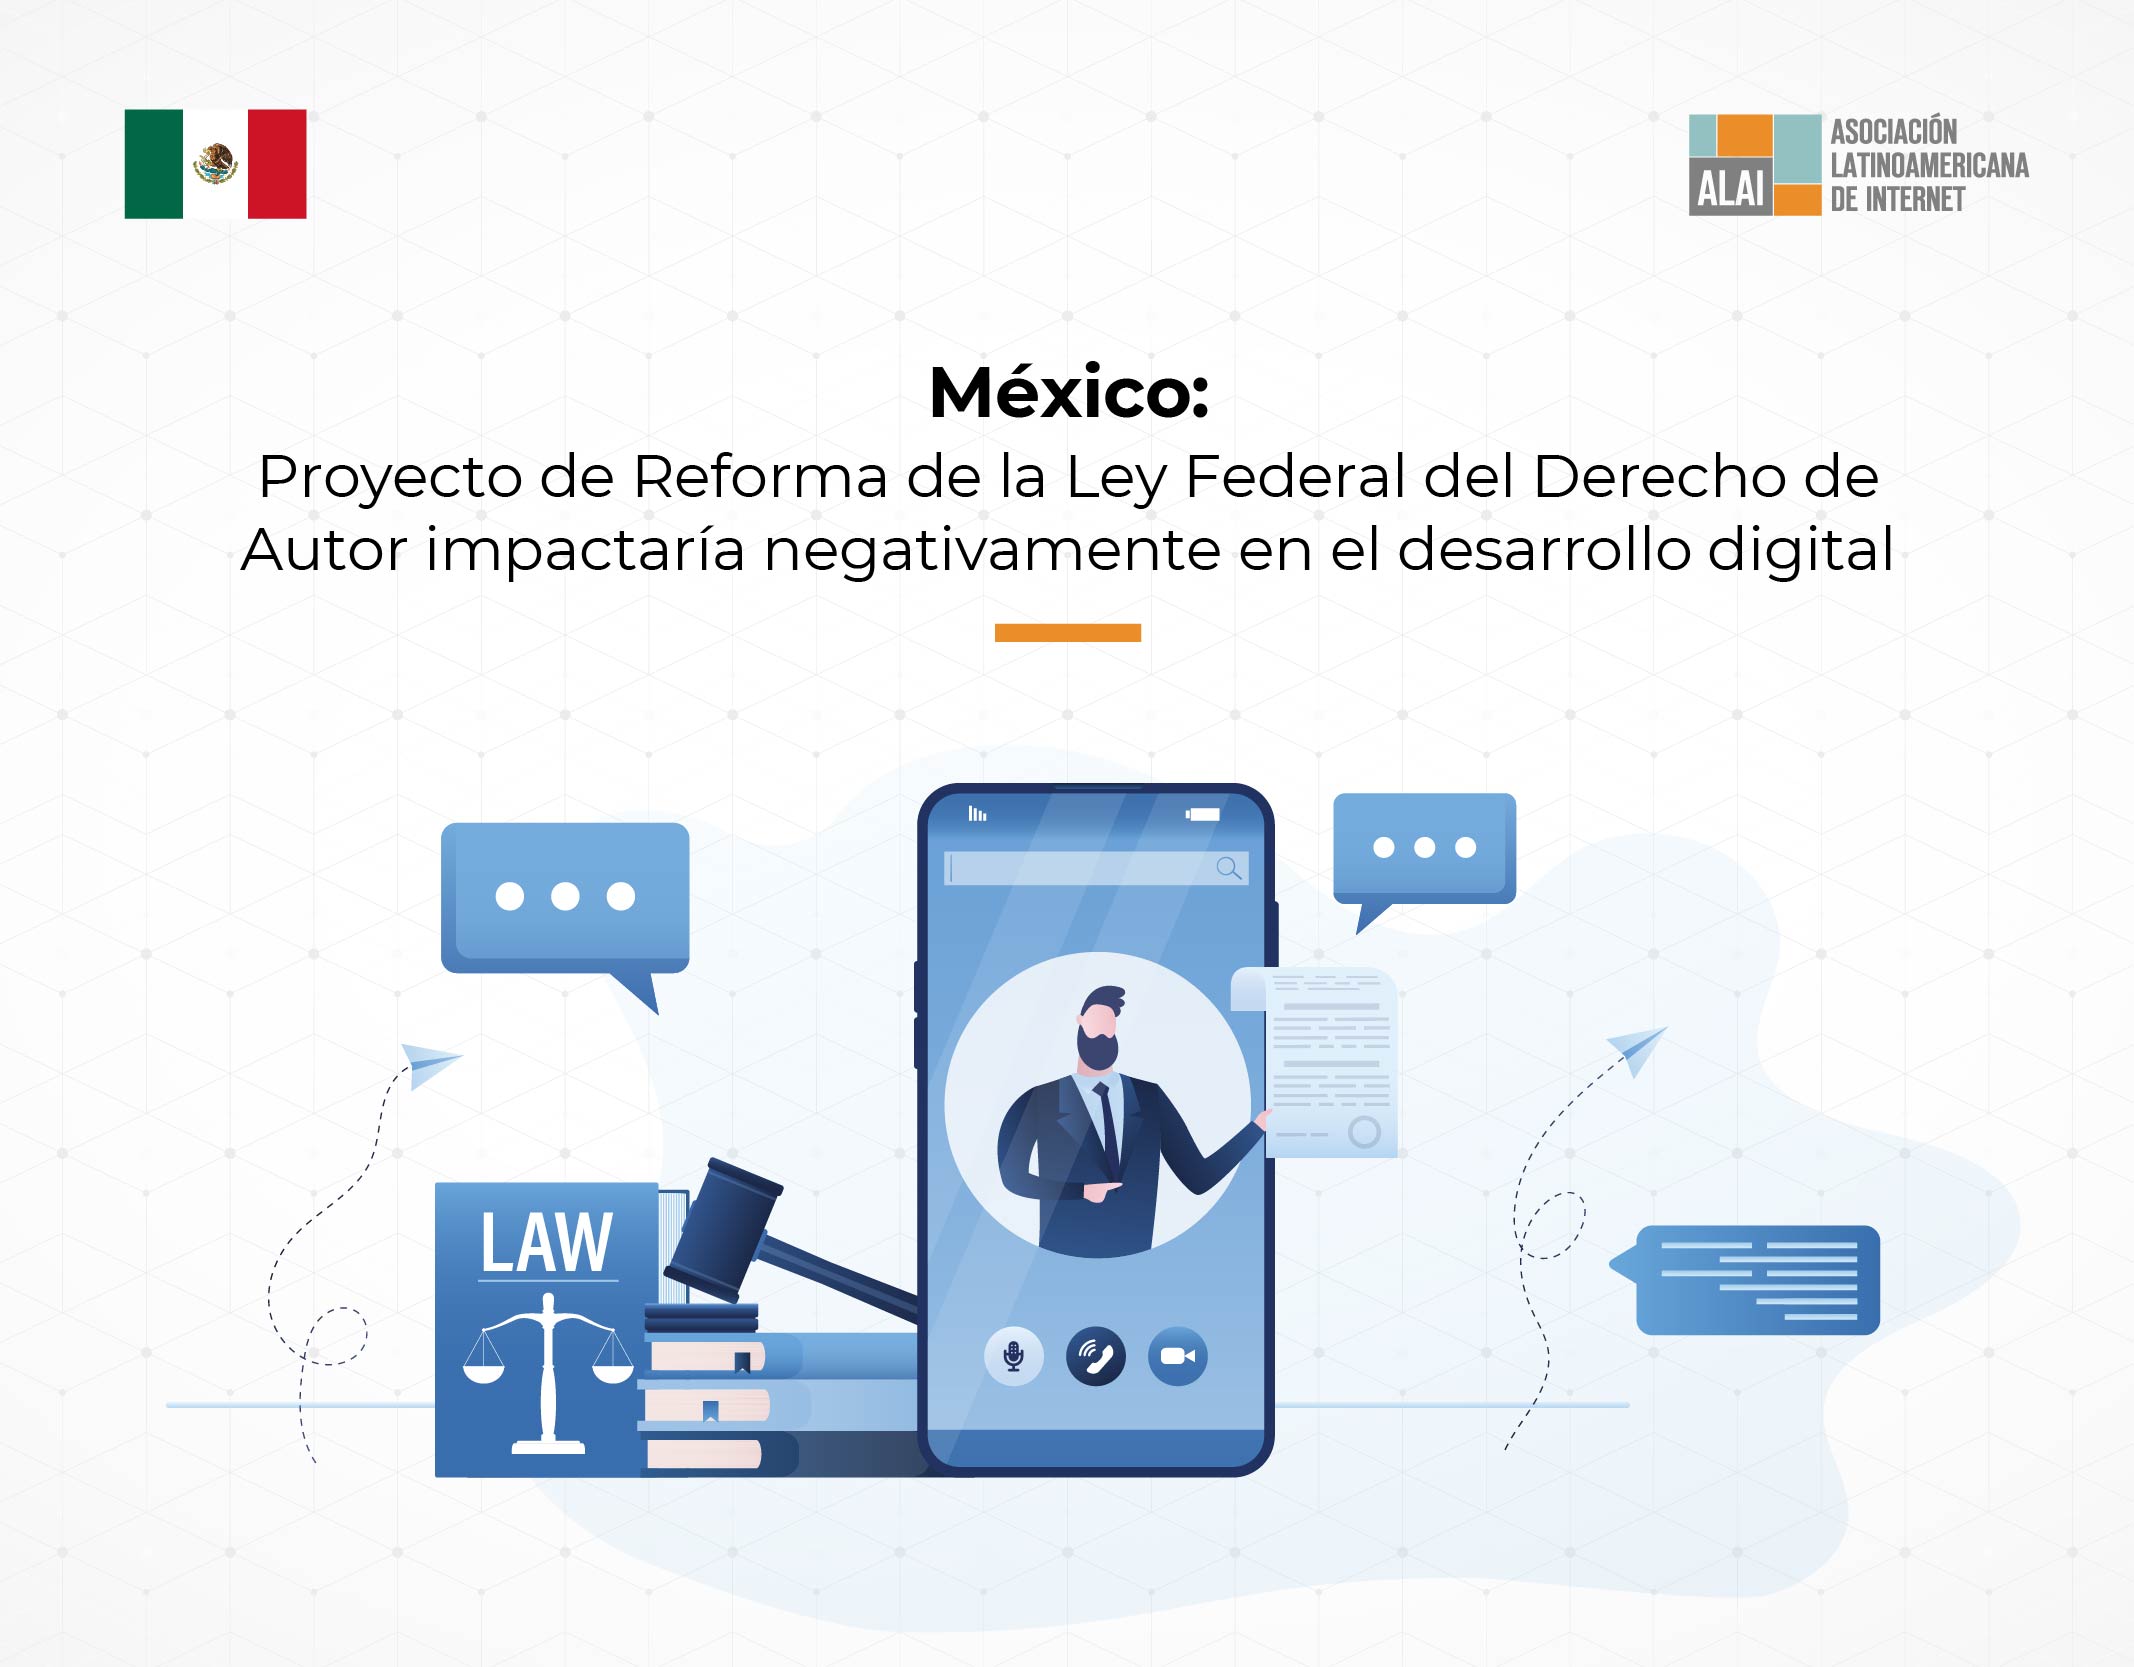 México: Proyecto de Reforma de la Ley Federal del Derecho de Autor impactaría negativamente en el desarrollo digital